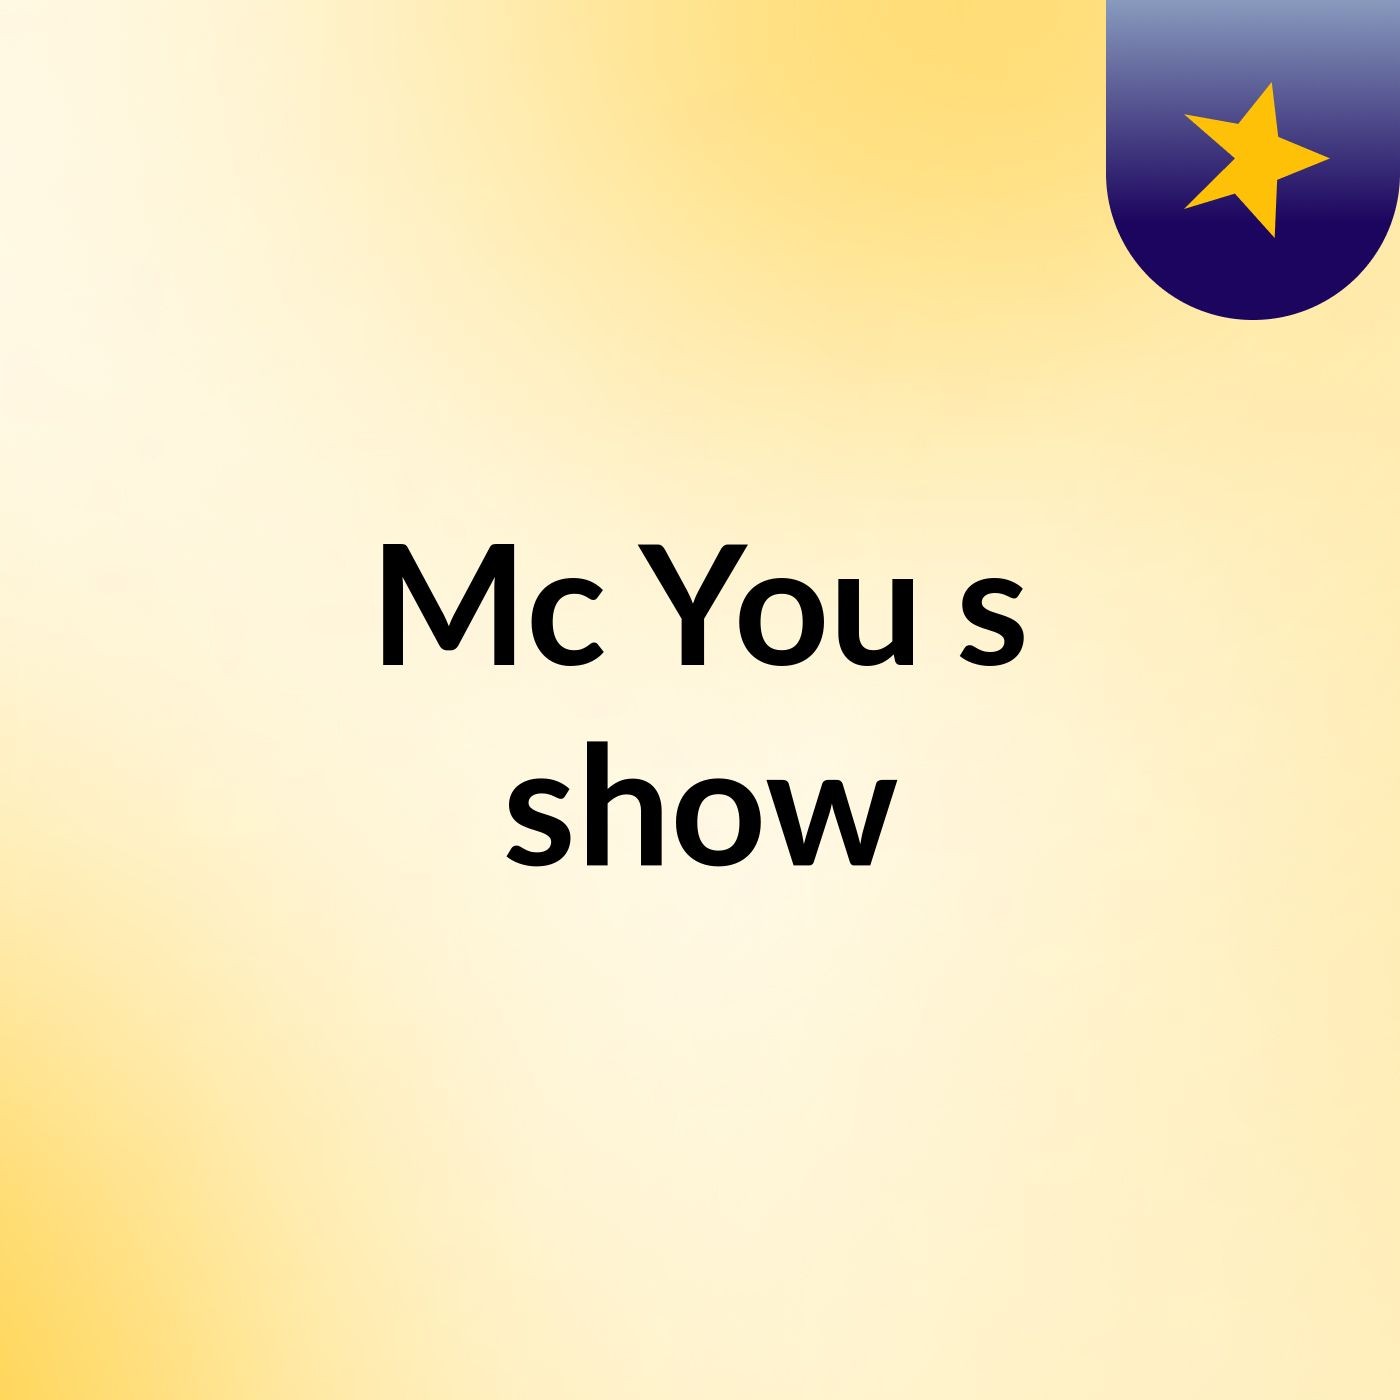 Mc You's show